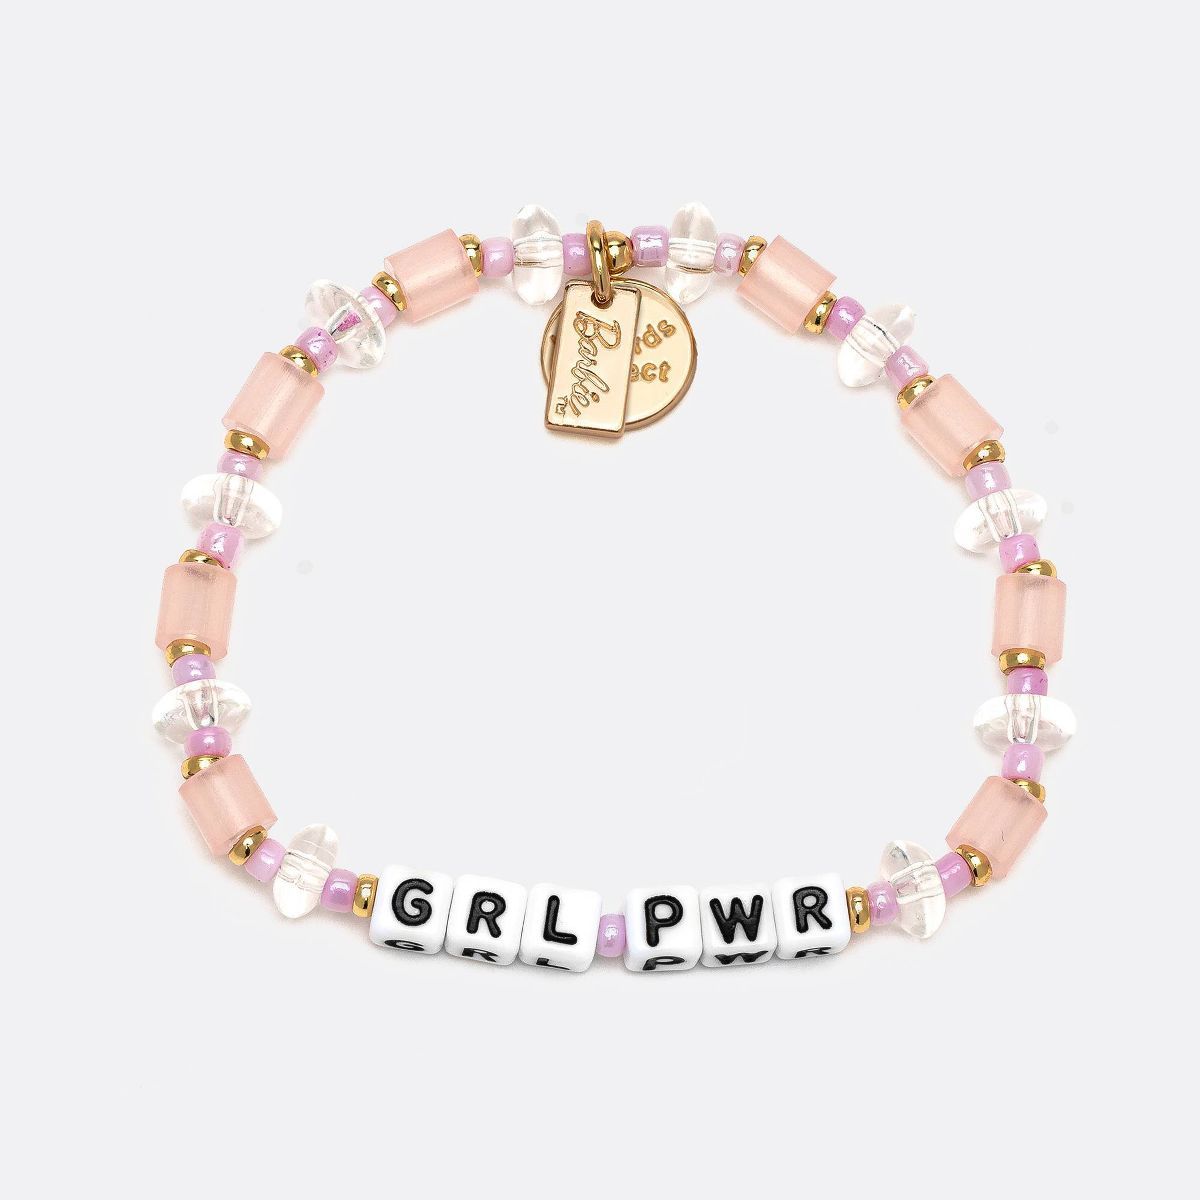 Little Words Project Grl Pwr Barbie Beaded Bracelet - Pink | Target